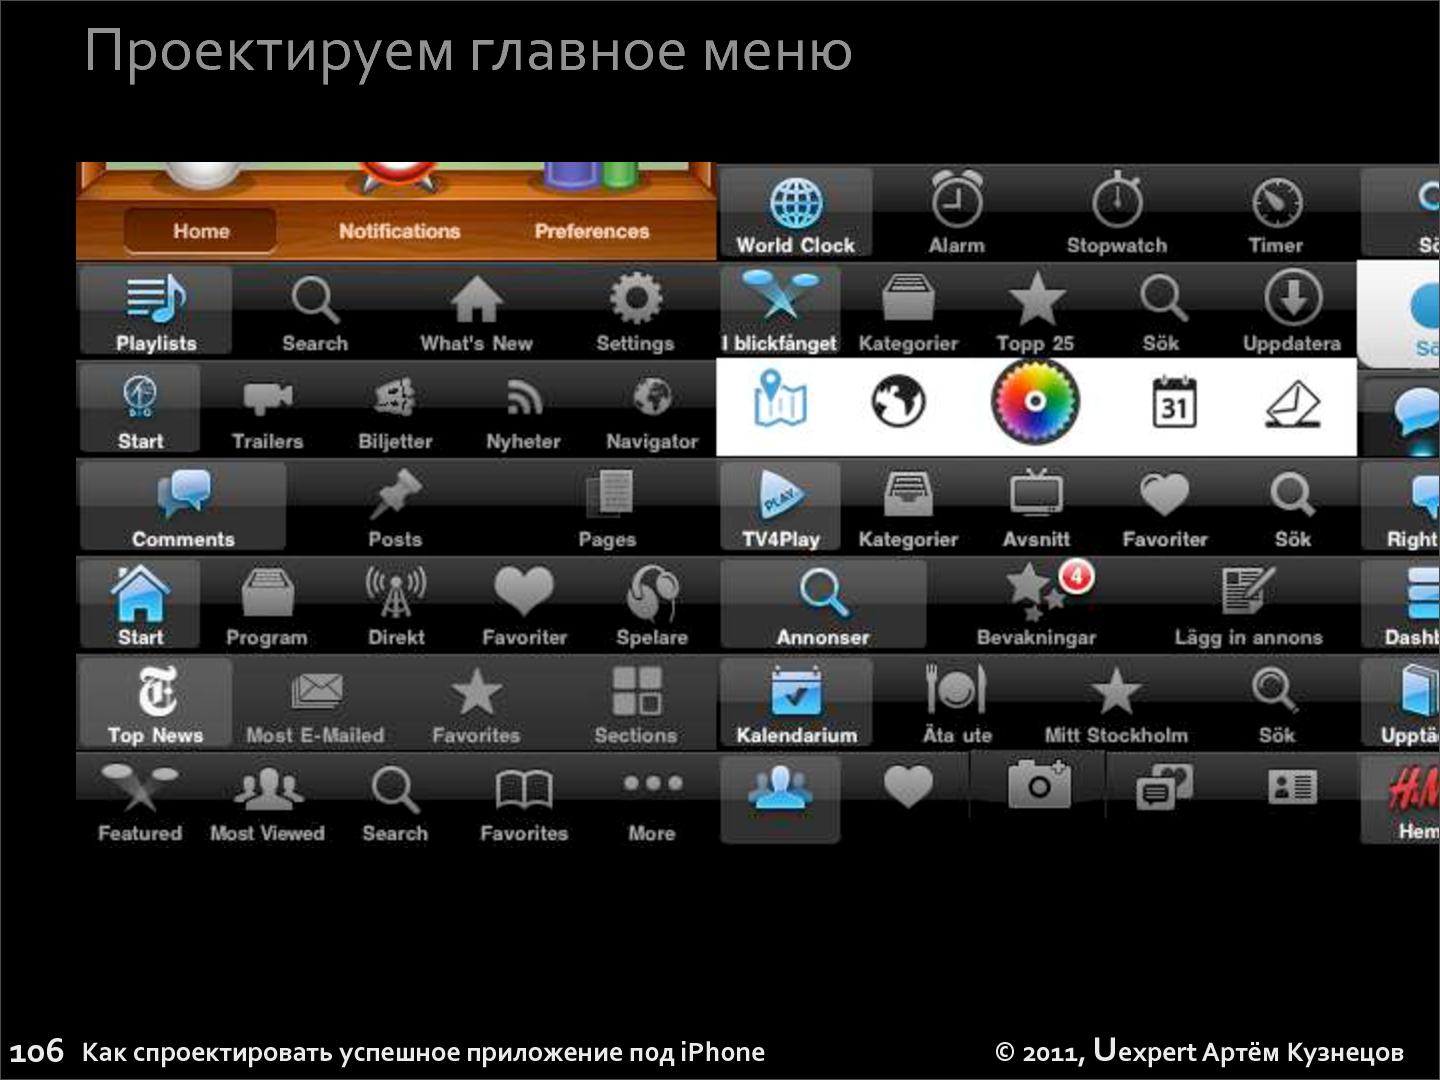 Файл:Как спроектировать успешное приложение для iPhone (Артем Кузнецов, UXRussia-2011).pdf